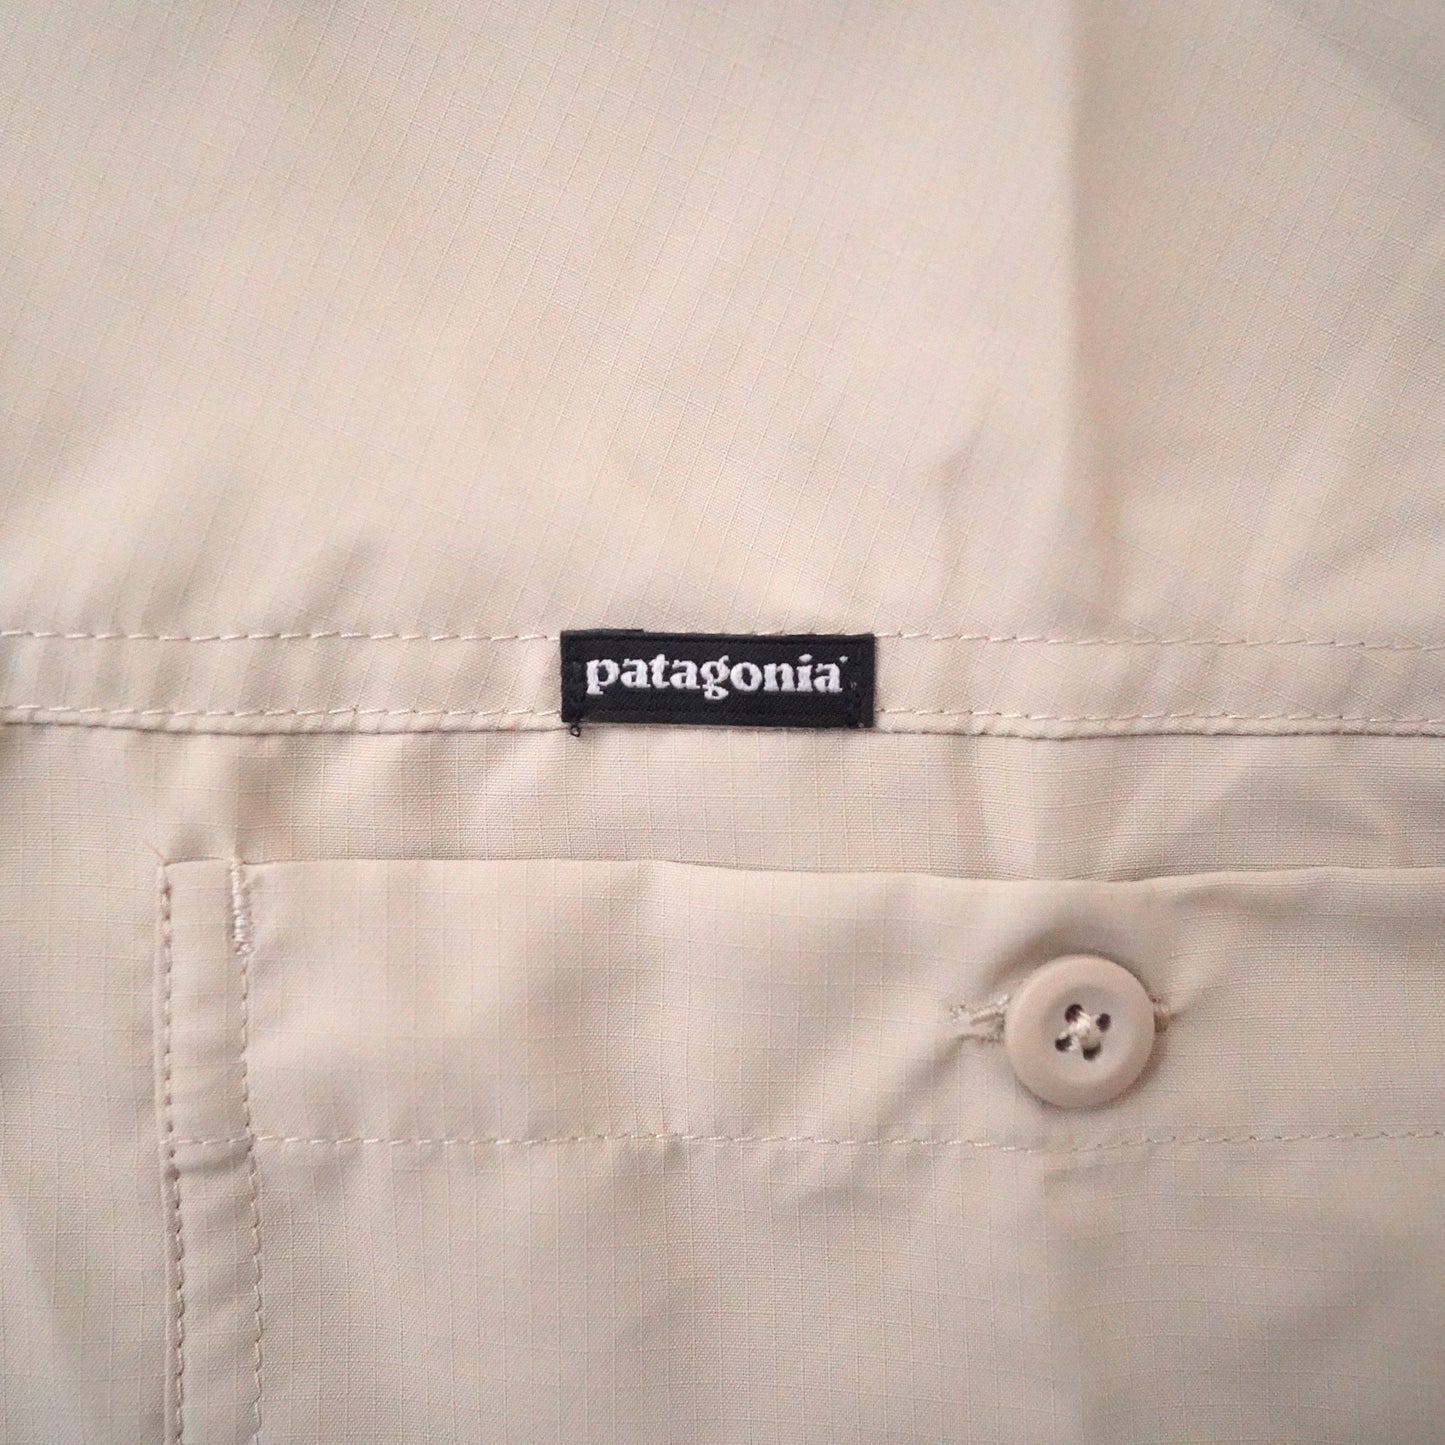 Patagonia Poriester shirts